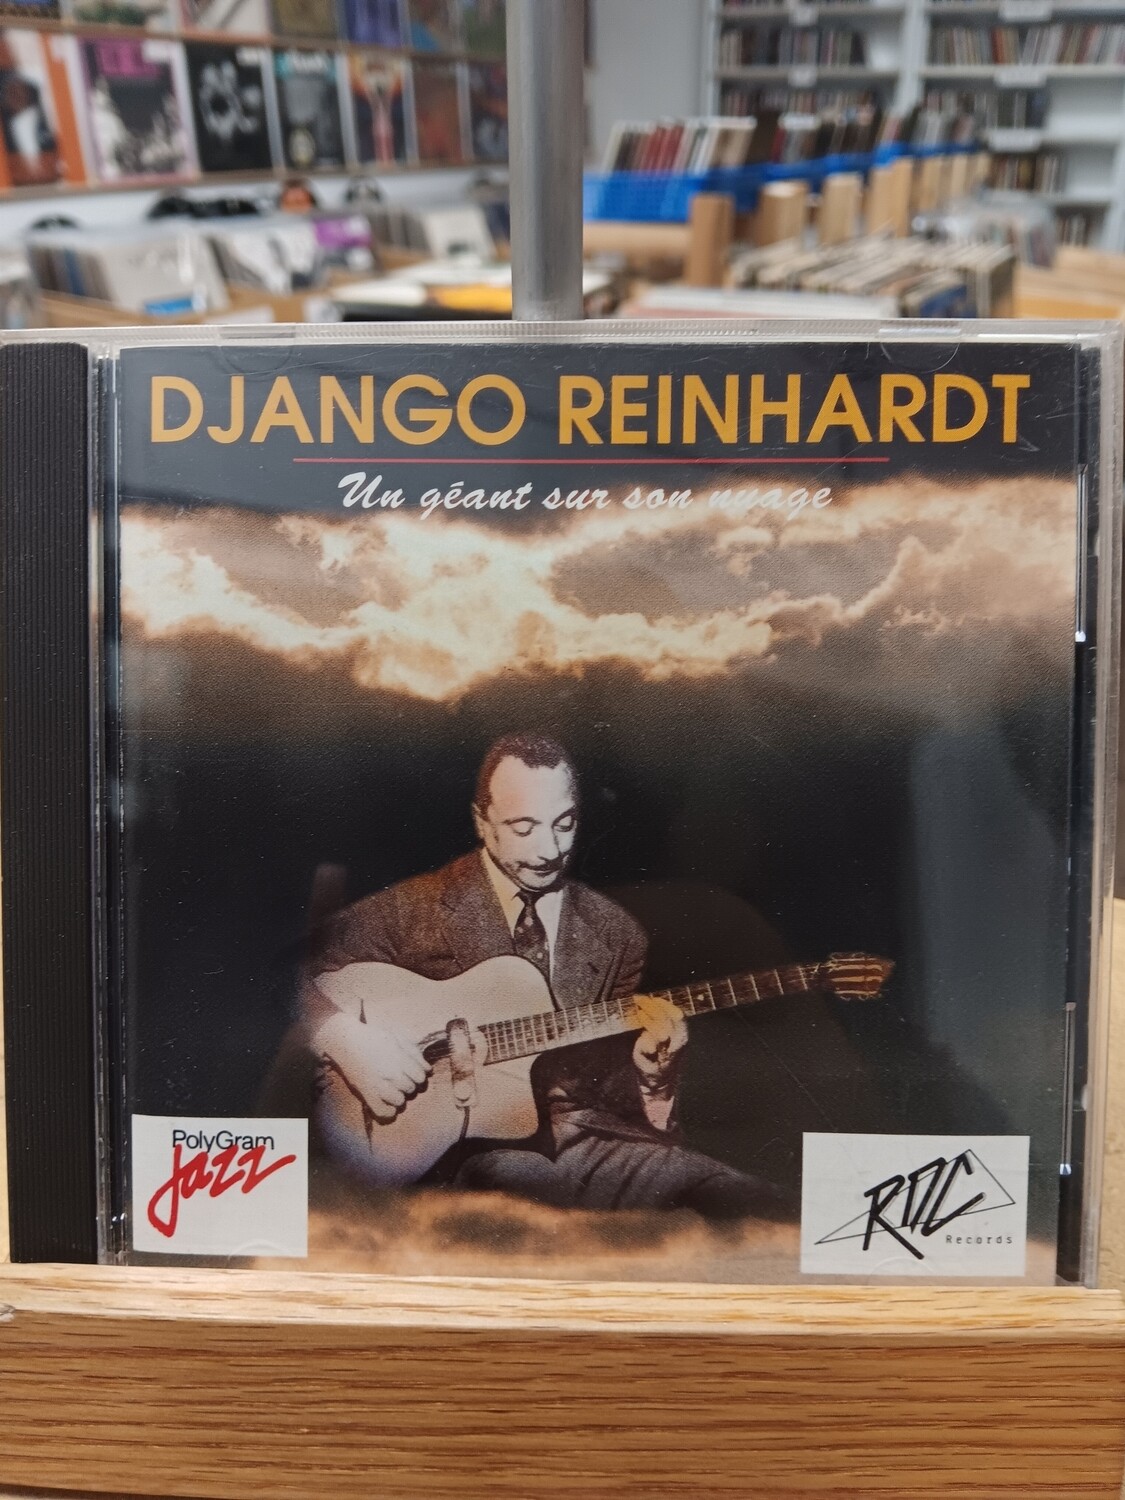 DJANGO REINHARDT - Un géant sur son nuage (CD)